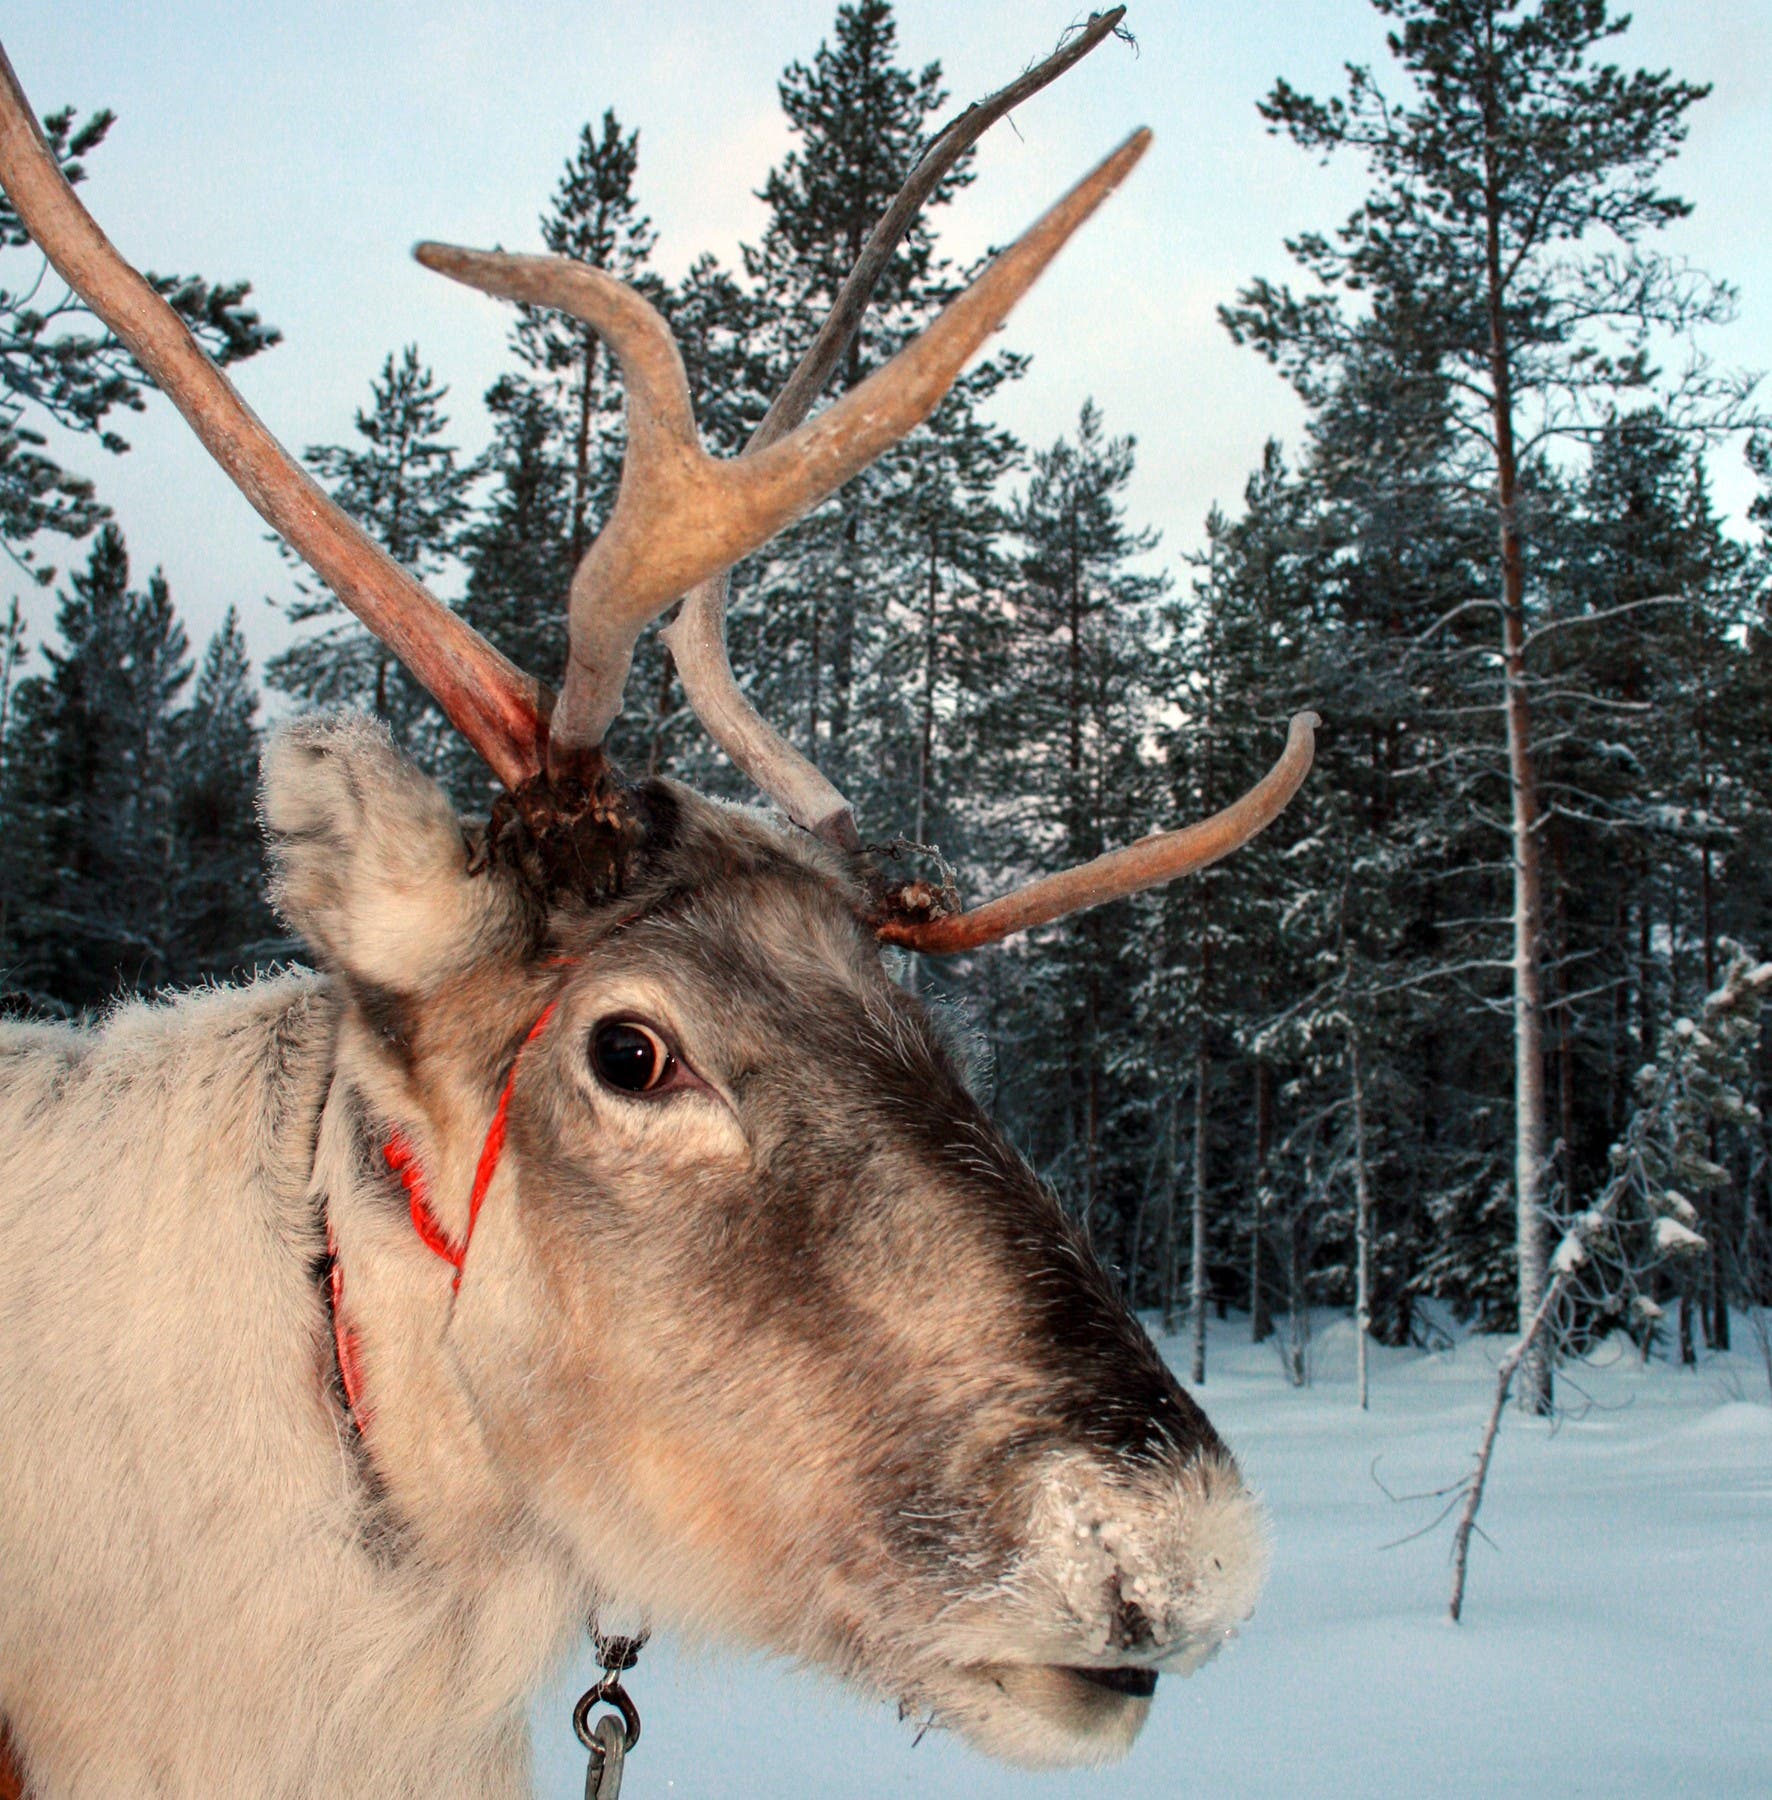 Dickes Fell bring Rudolph auch im Winter ganz schon ins Schwitzen.  